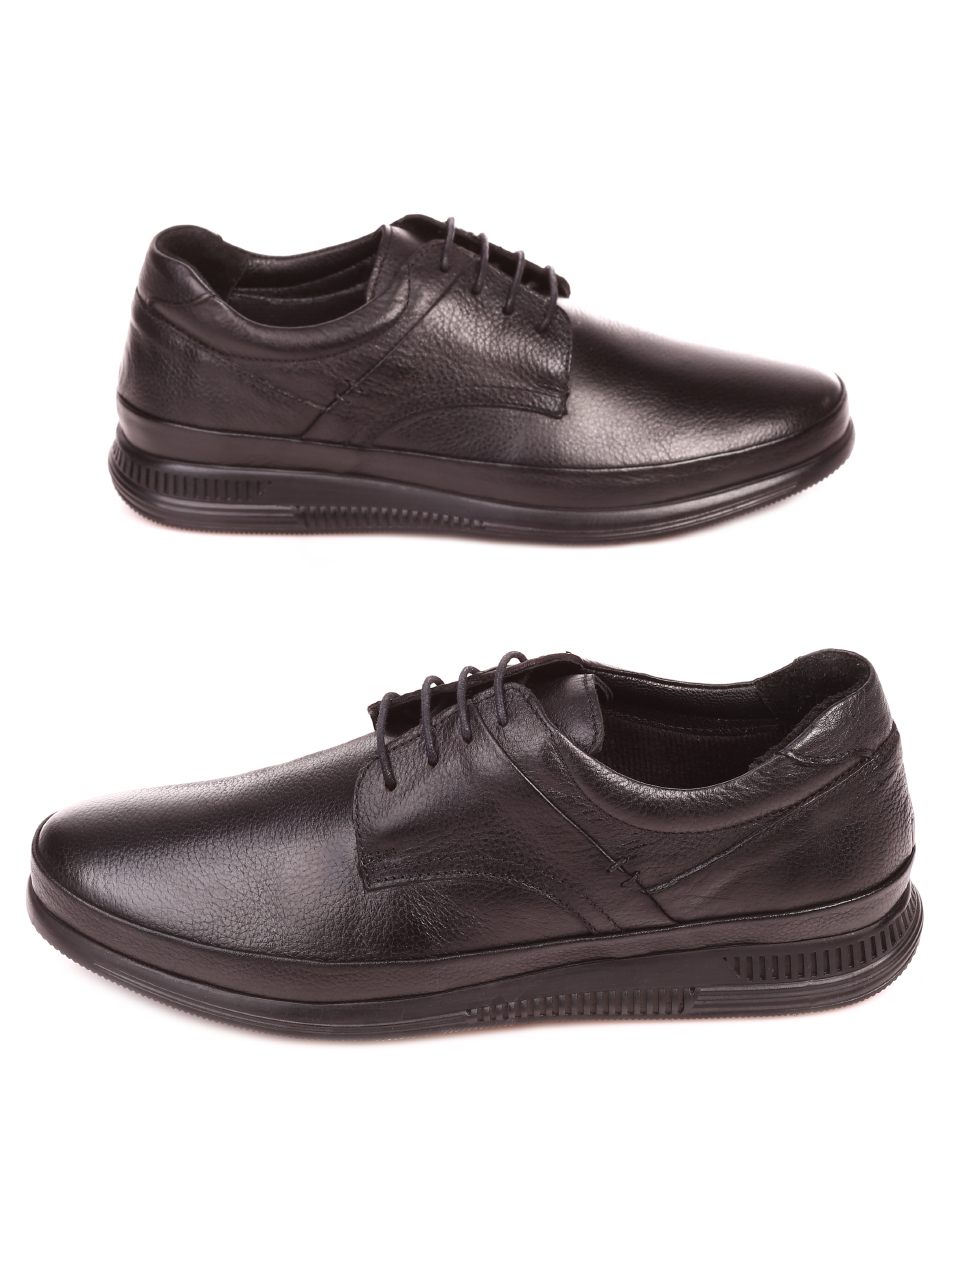 Ежедневни мъжки обувки от естествена кожа 7AT-21880 black